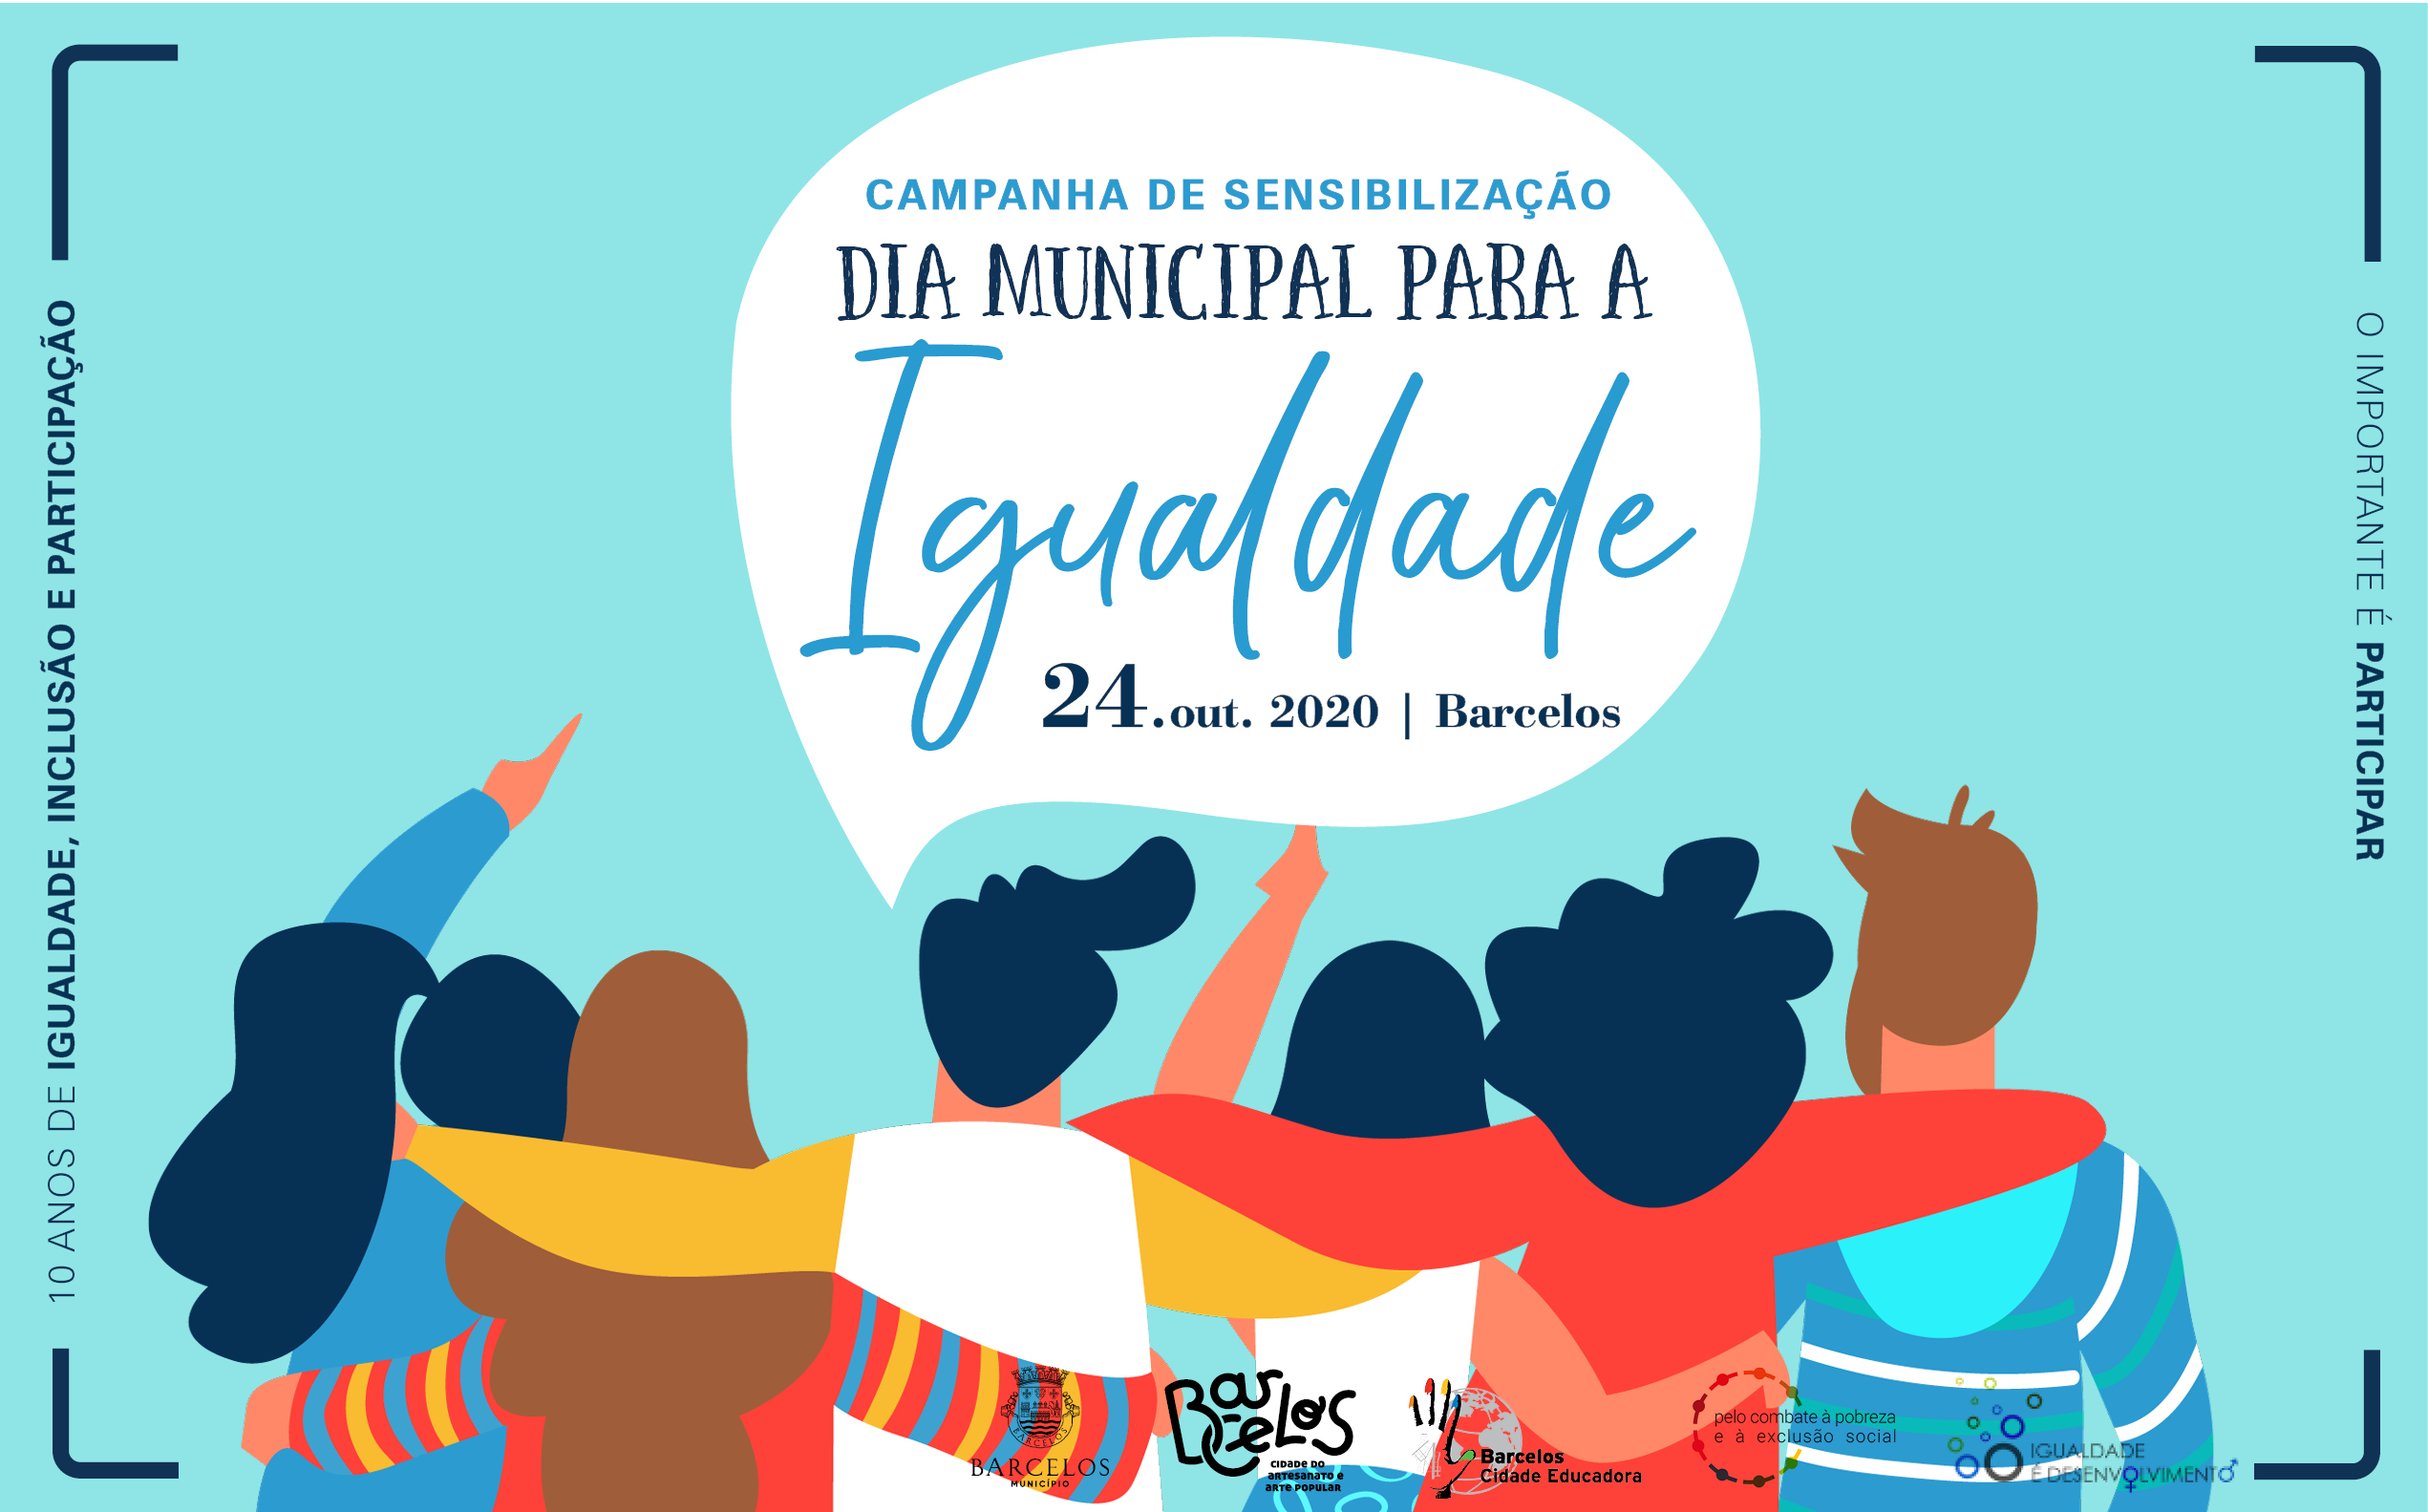 Barcelos assinala o Dia Municipal para a Igualdade